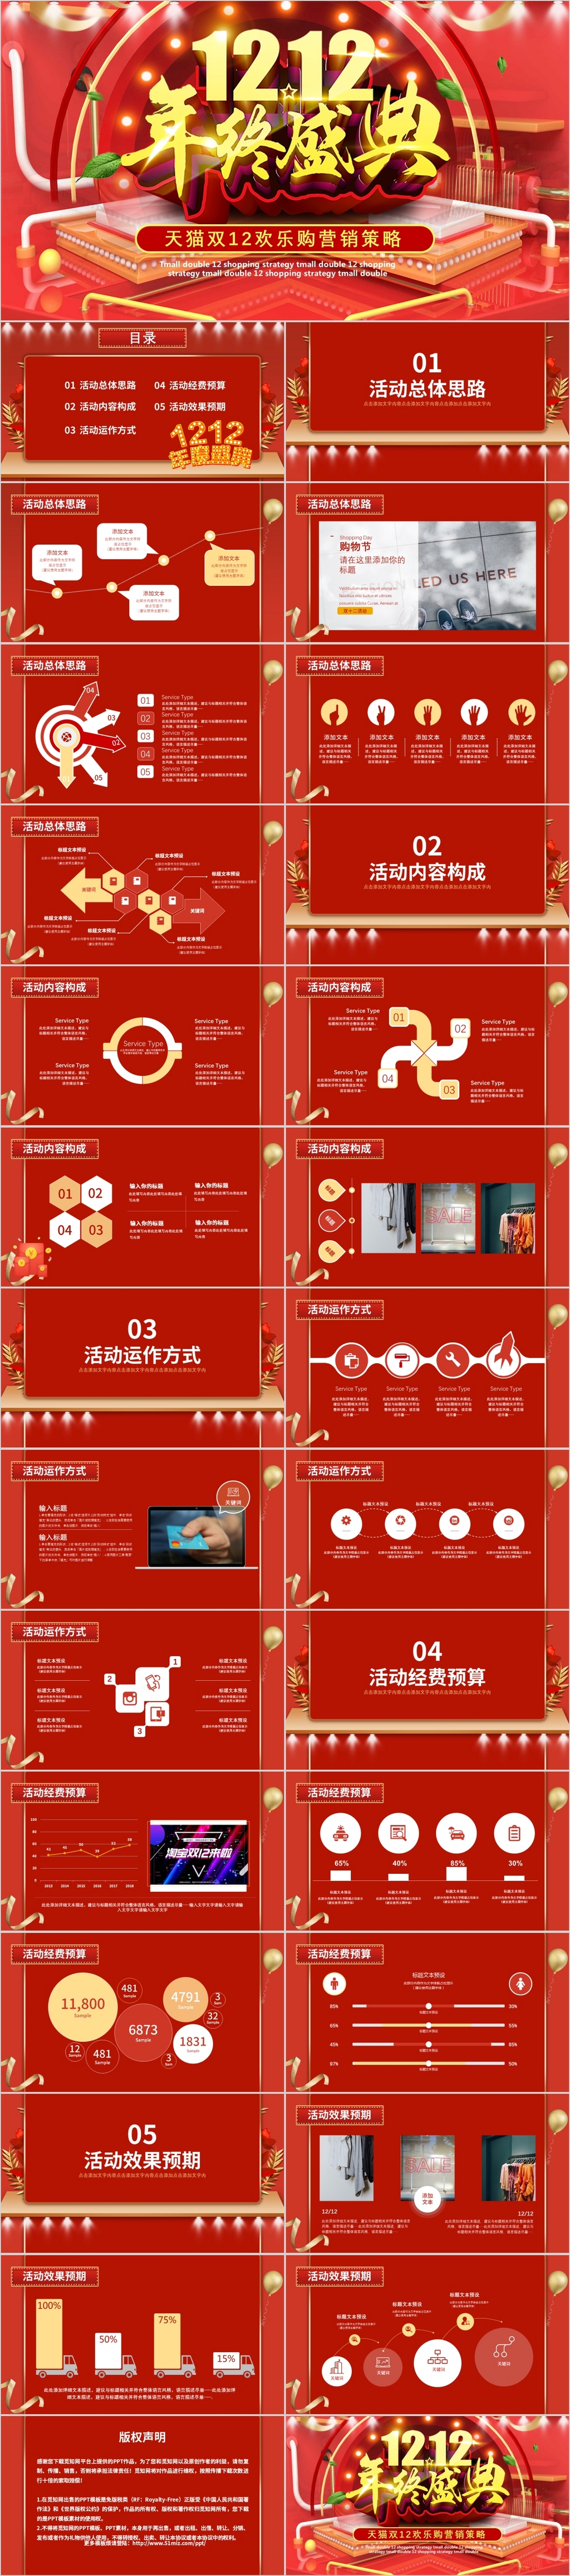 红色喜庆双十二购物节电商线上线下促销活动策划方案ppt模板